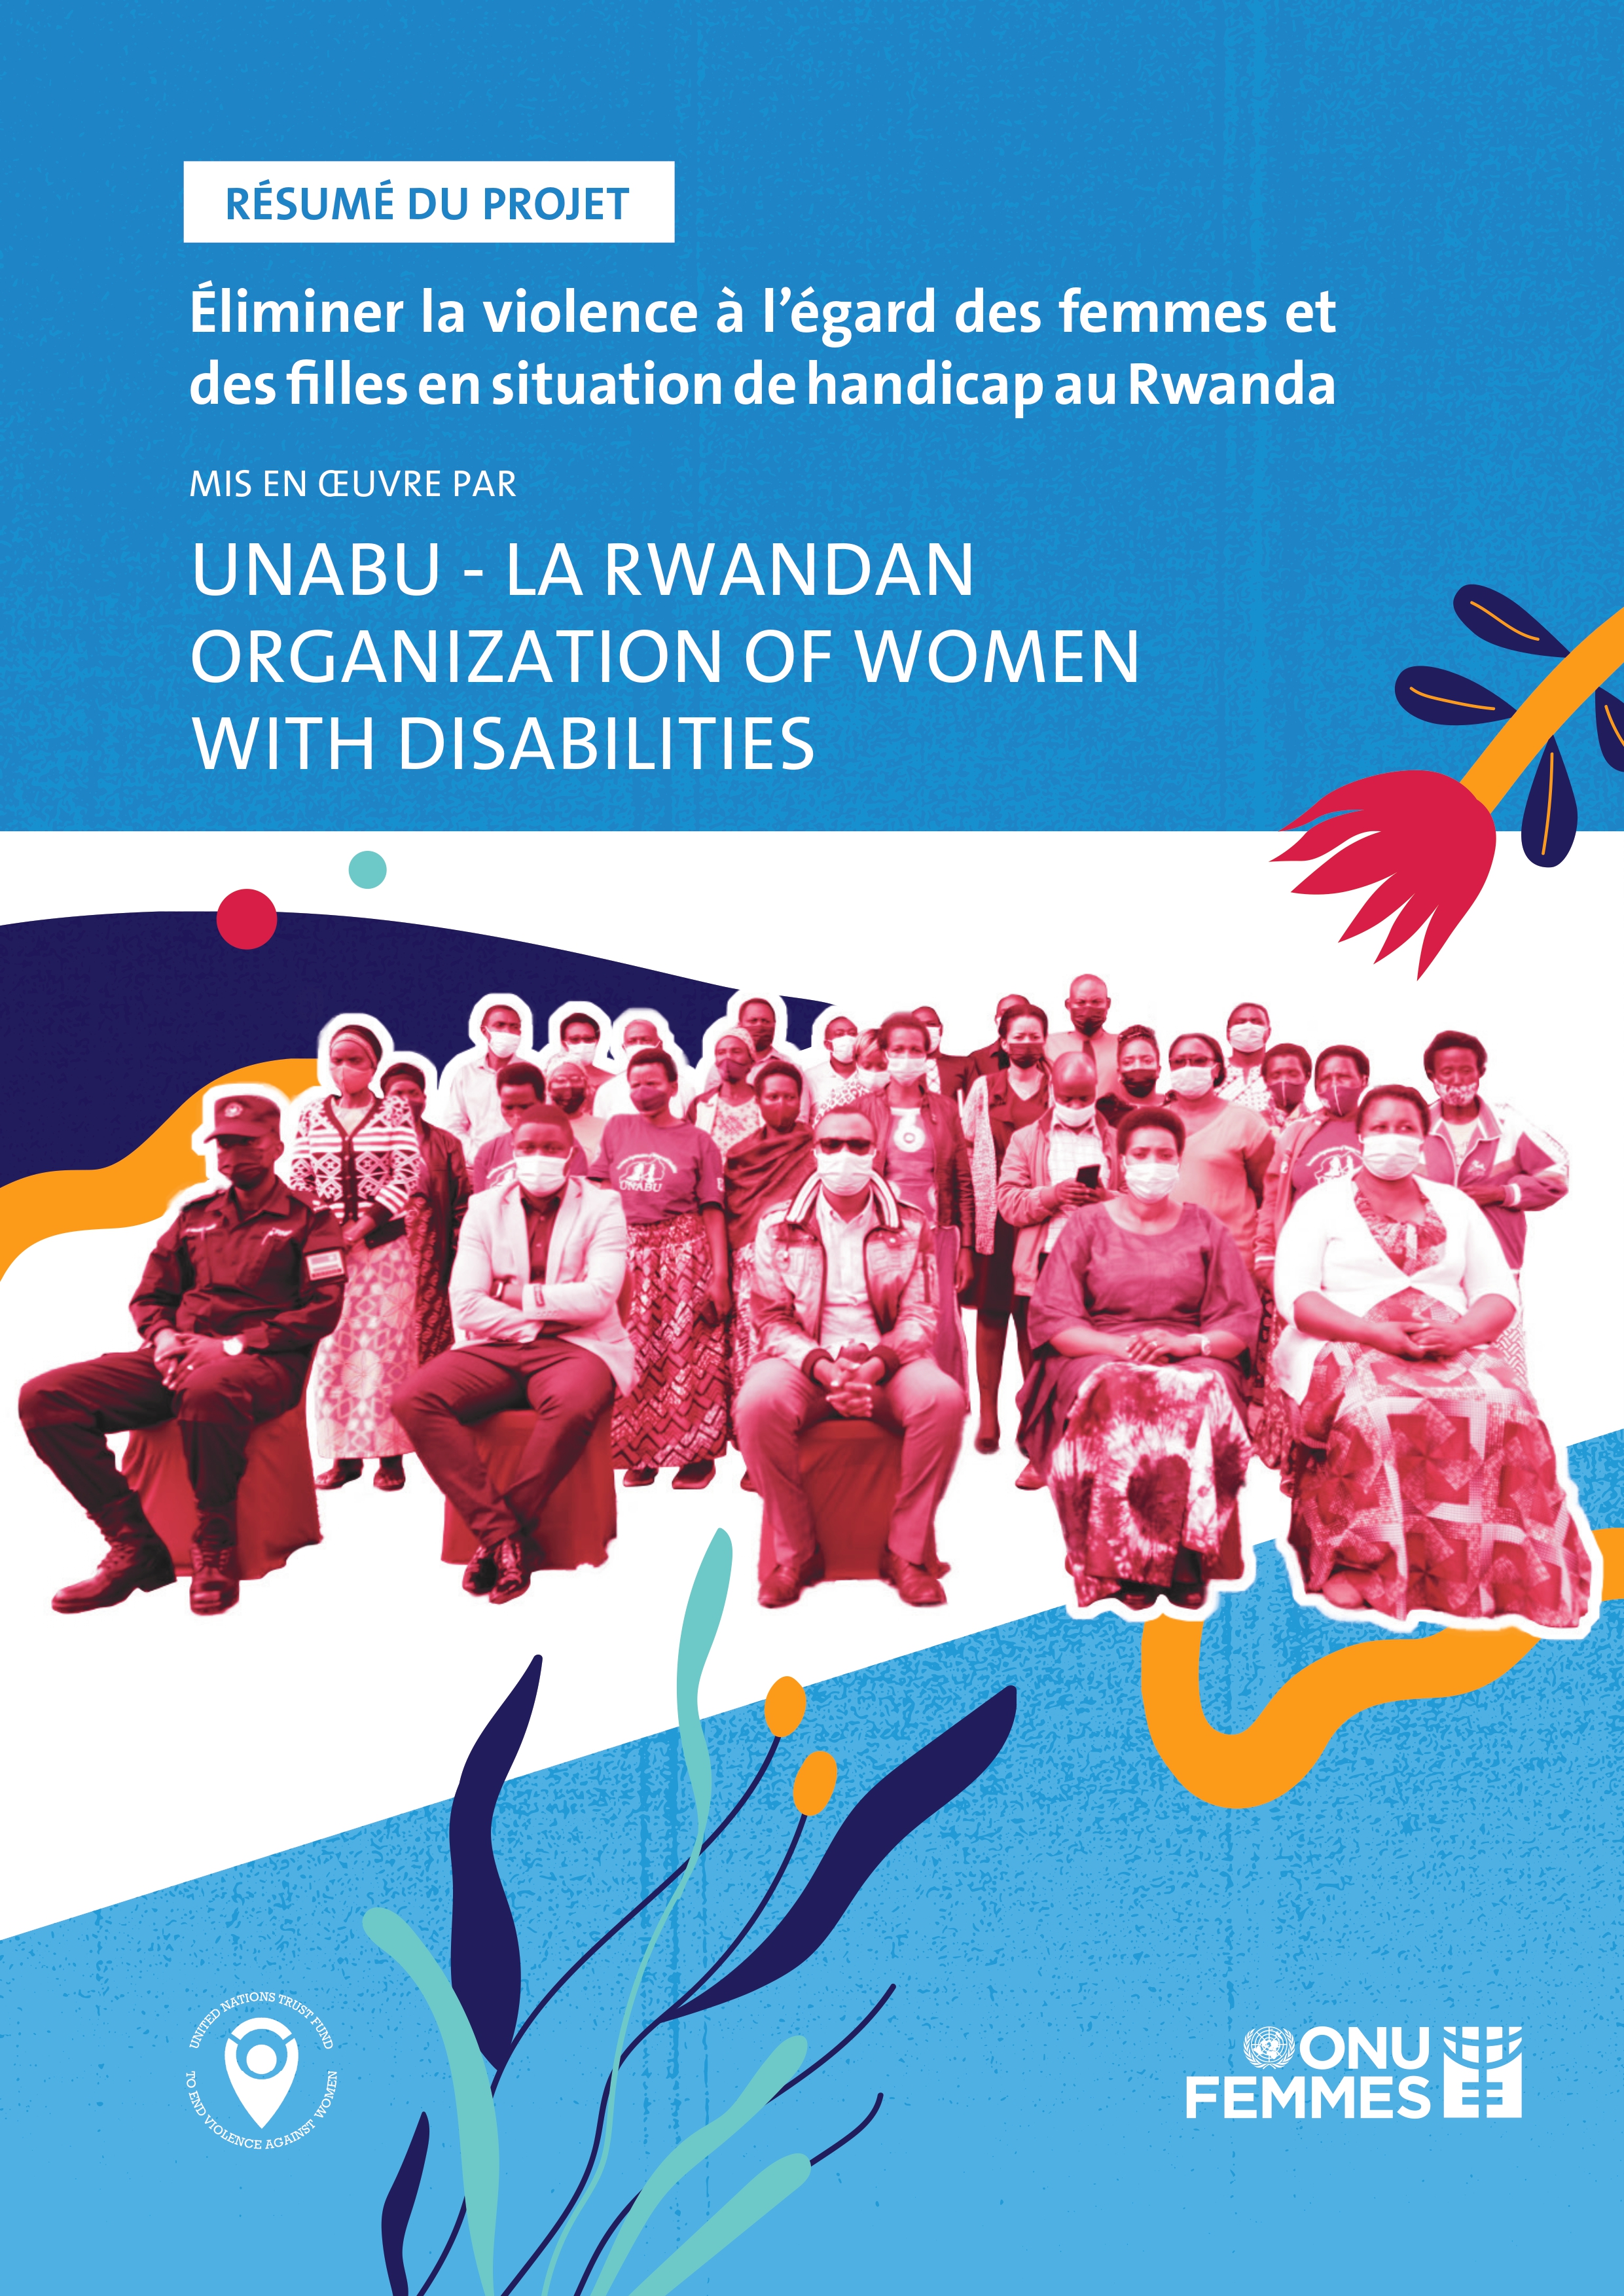 Project Summary of “Eliminating Violence against Women and Girls with Disabilities in Rwanda” by UNABU: Umuryango Nyarwanda w’Abagore Bafite Ubumuga 